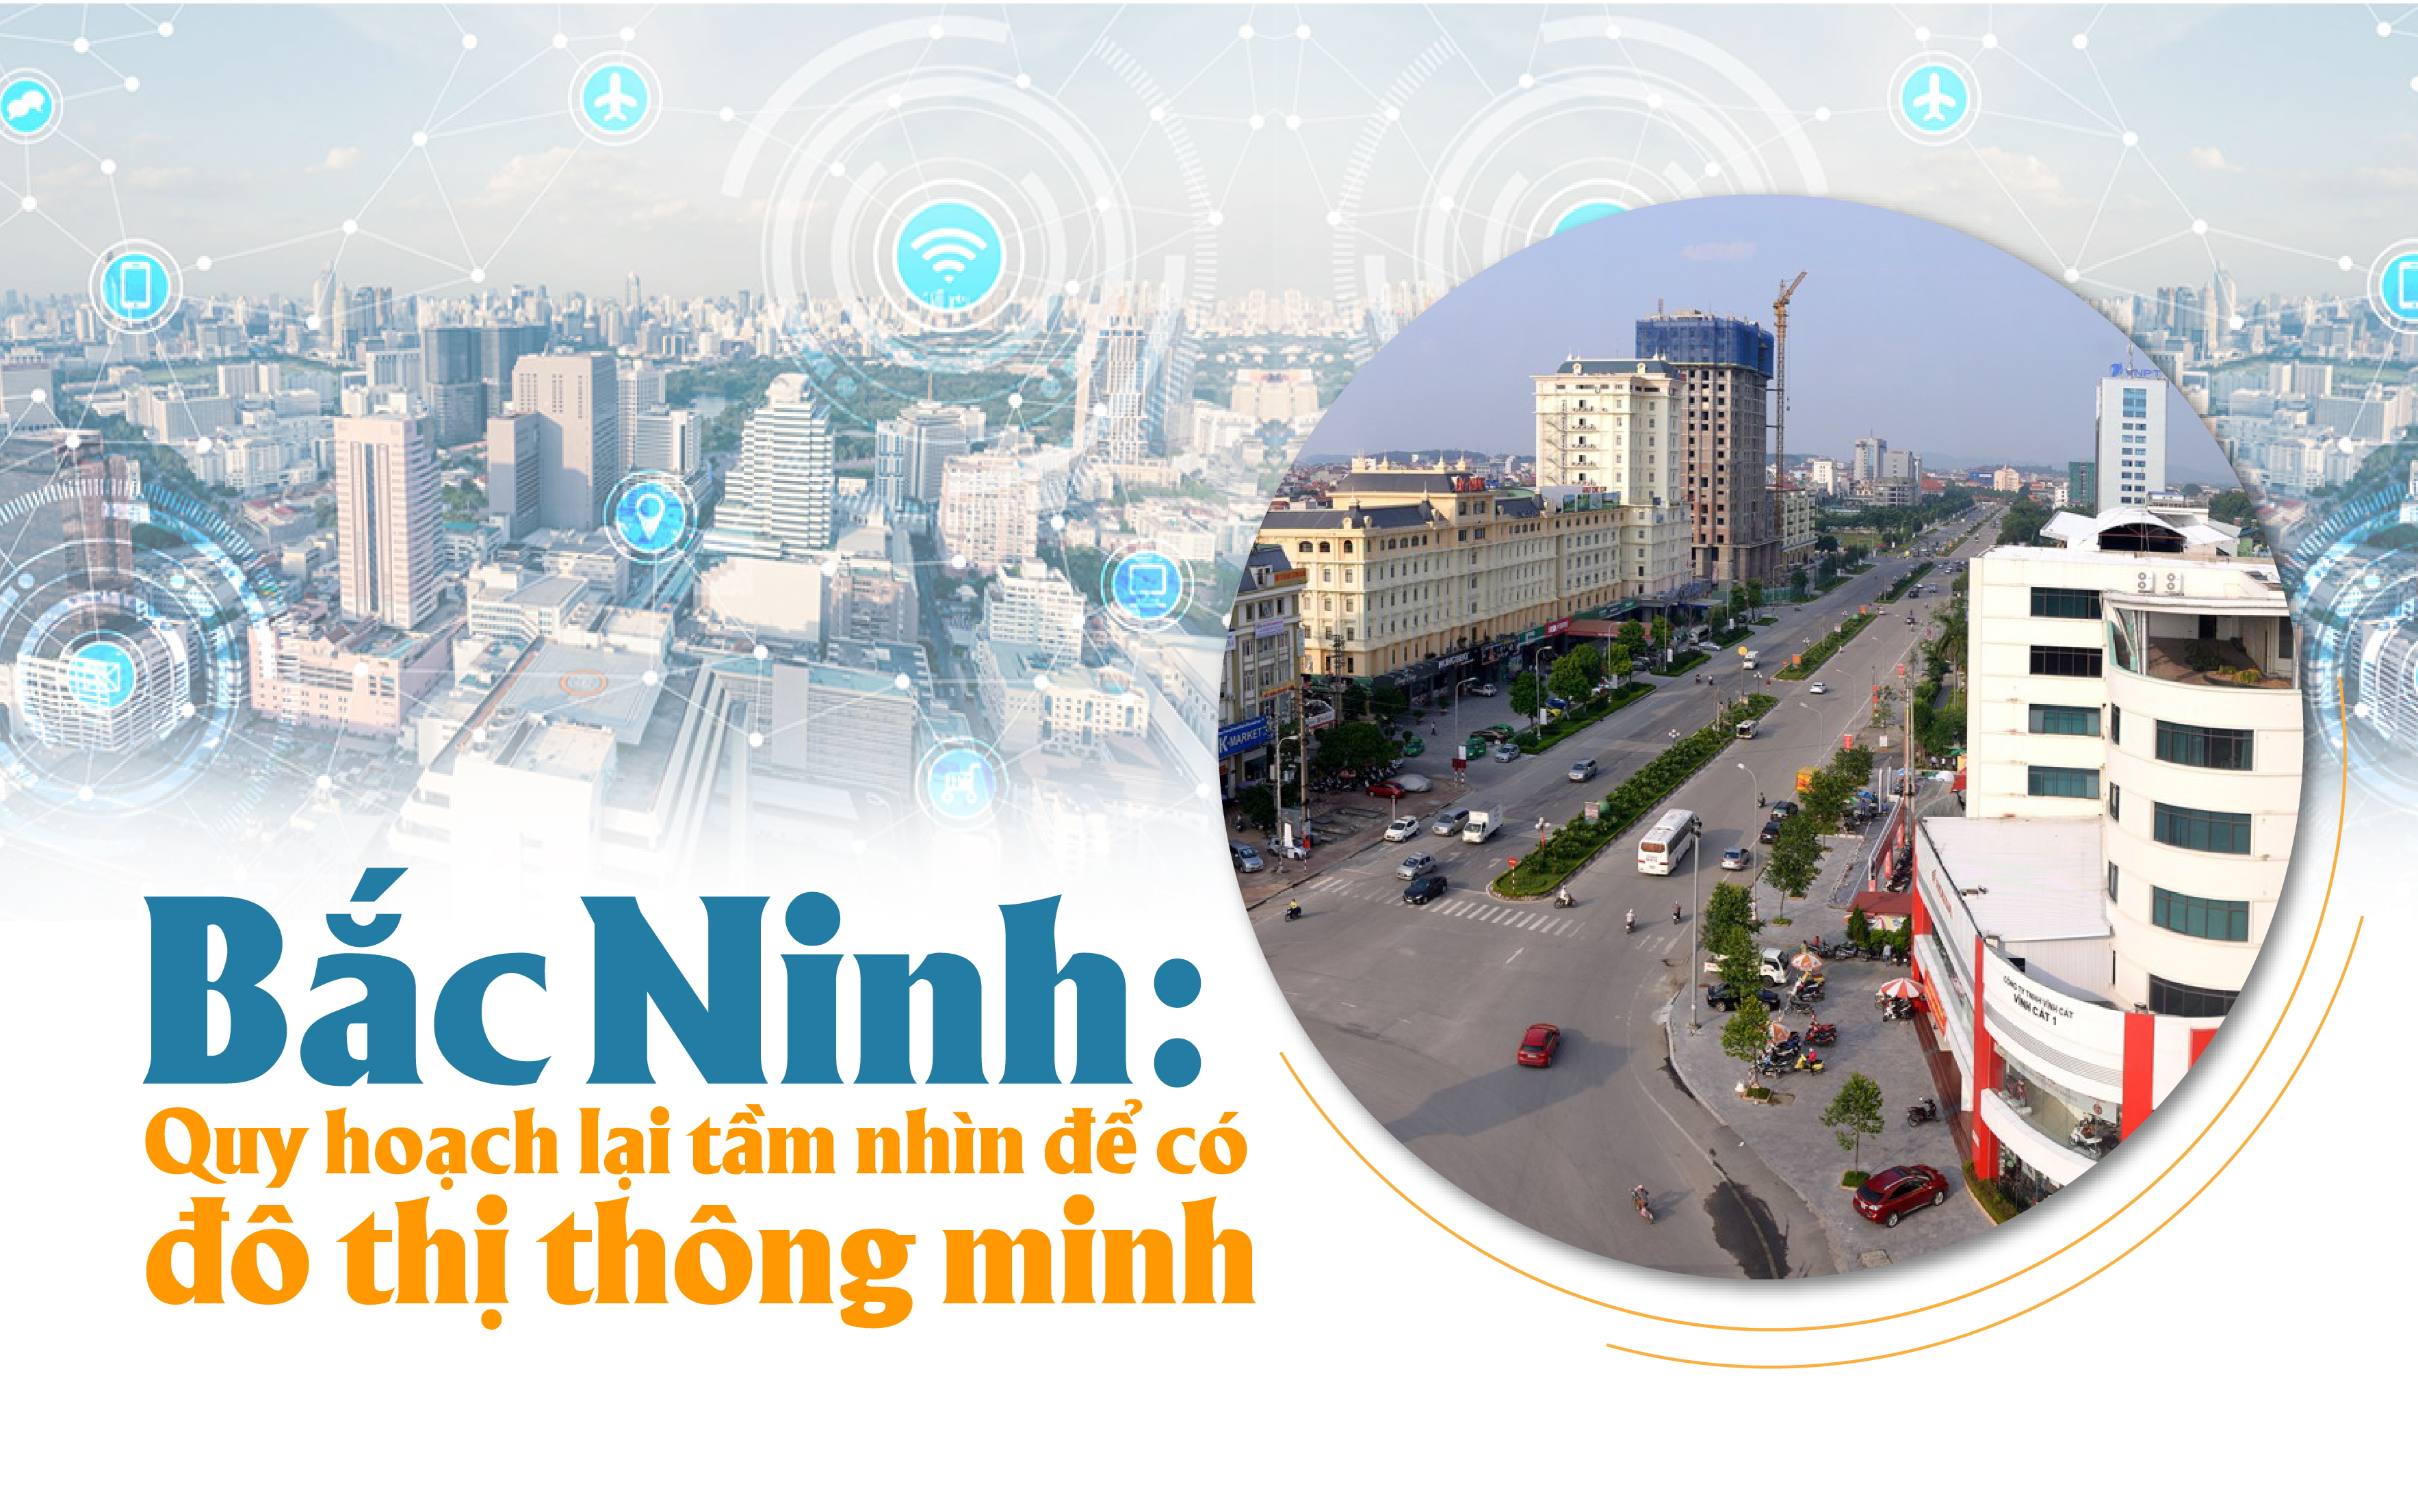 Bắc Ninh: Quy hoạch lại tầm nhìn để có đô thị thông minh